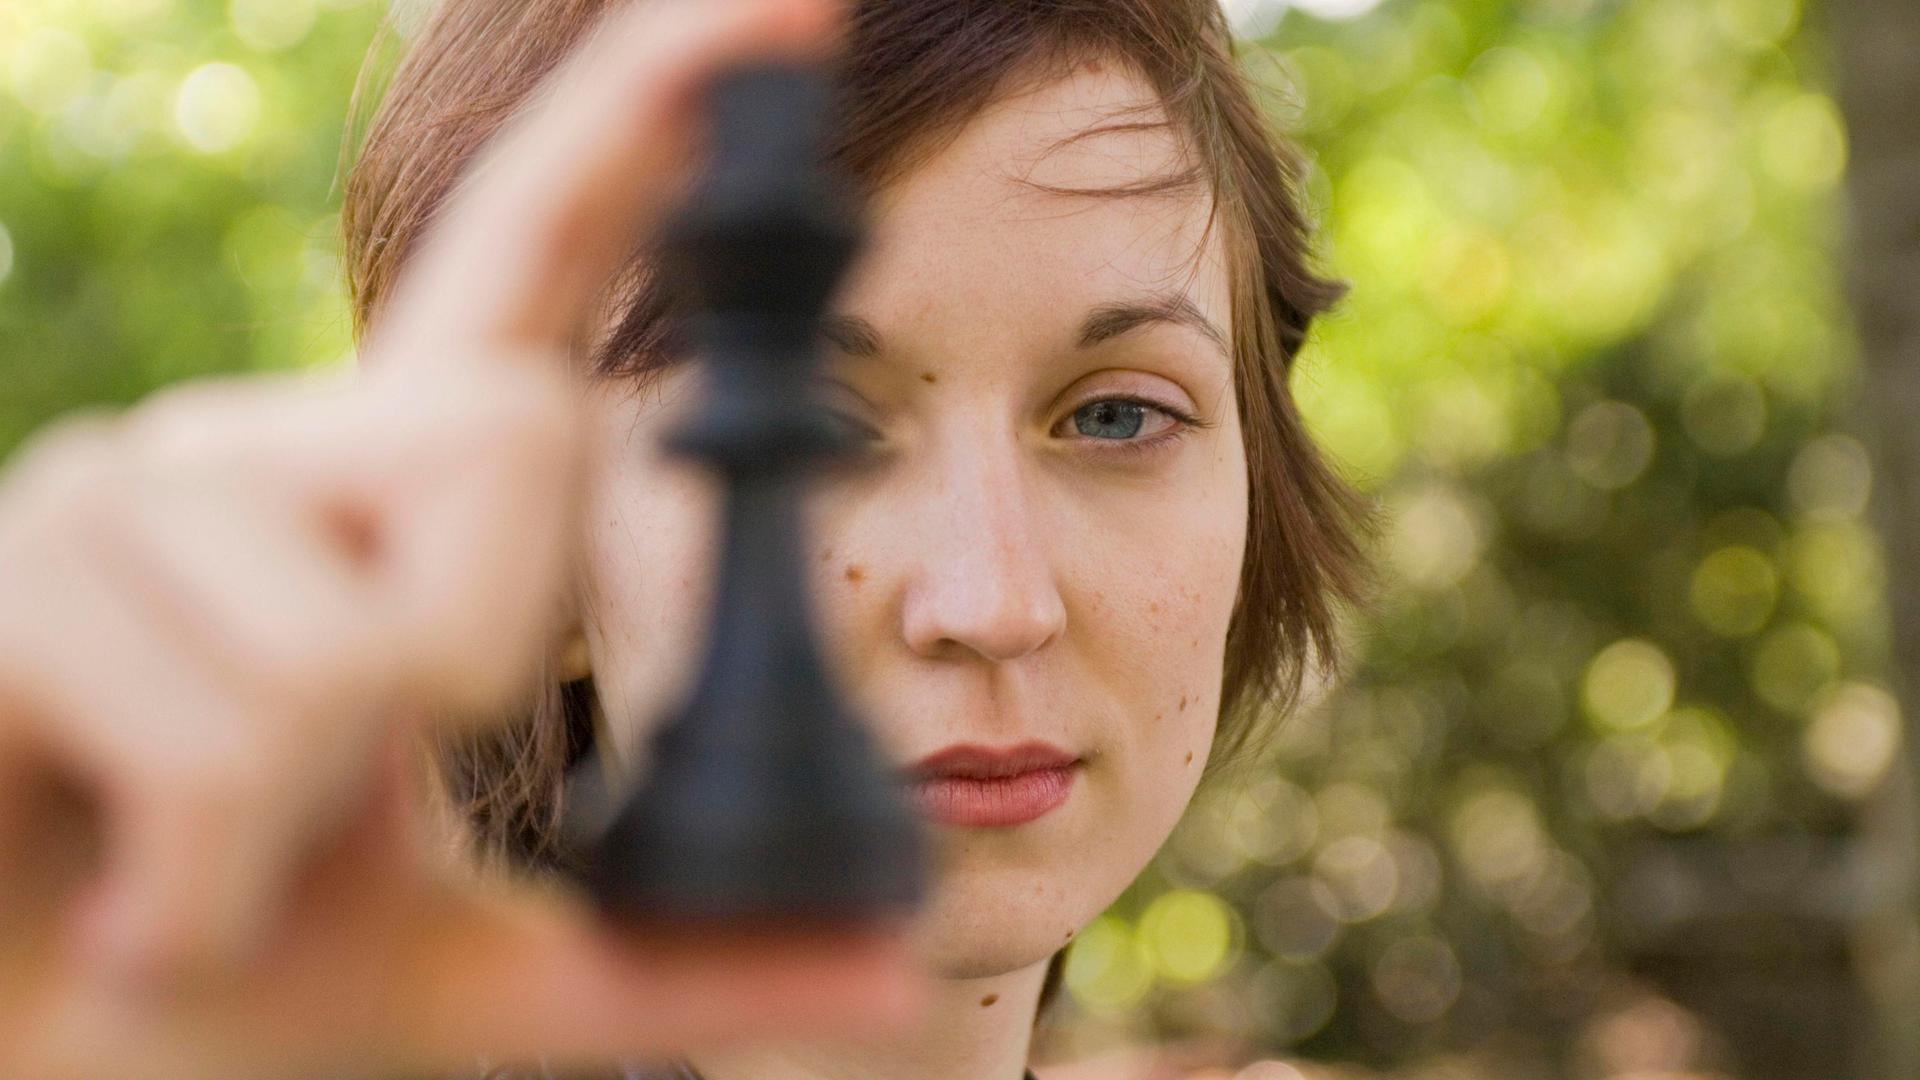 Porträt von Elisabeth Pähtz als Junioren-Weltmeisterin im Schach. Sie hält sich eine Schafigur vor das linke Auge und schaut dabei sehr ernst.